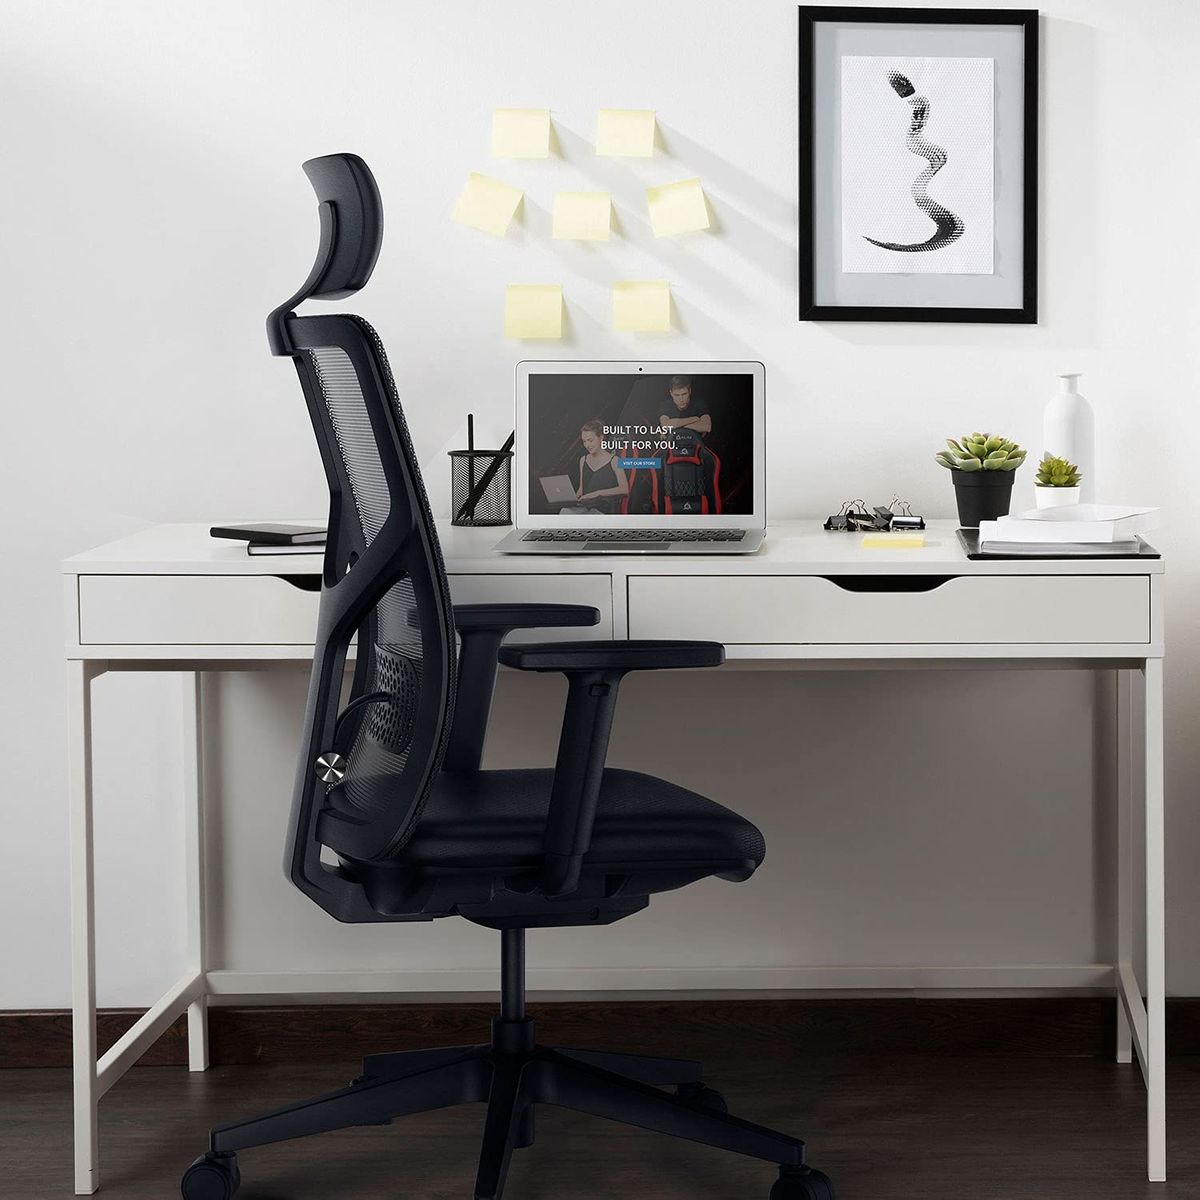 KLIM K400 Office Chair - Ergonomischer Bürostuhl + Weiches Sitzkissen & Stoff + Inklusive Kopfstütze + Max 135 kg & 180 cm + Verstellbarer Stuhl für Büro und Zuhause